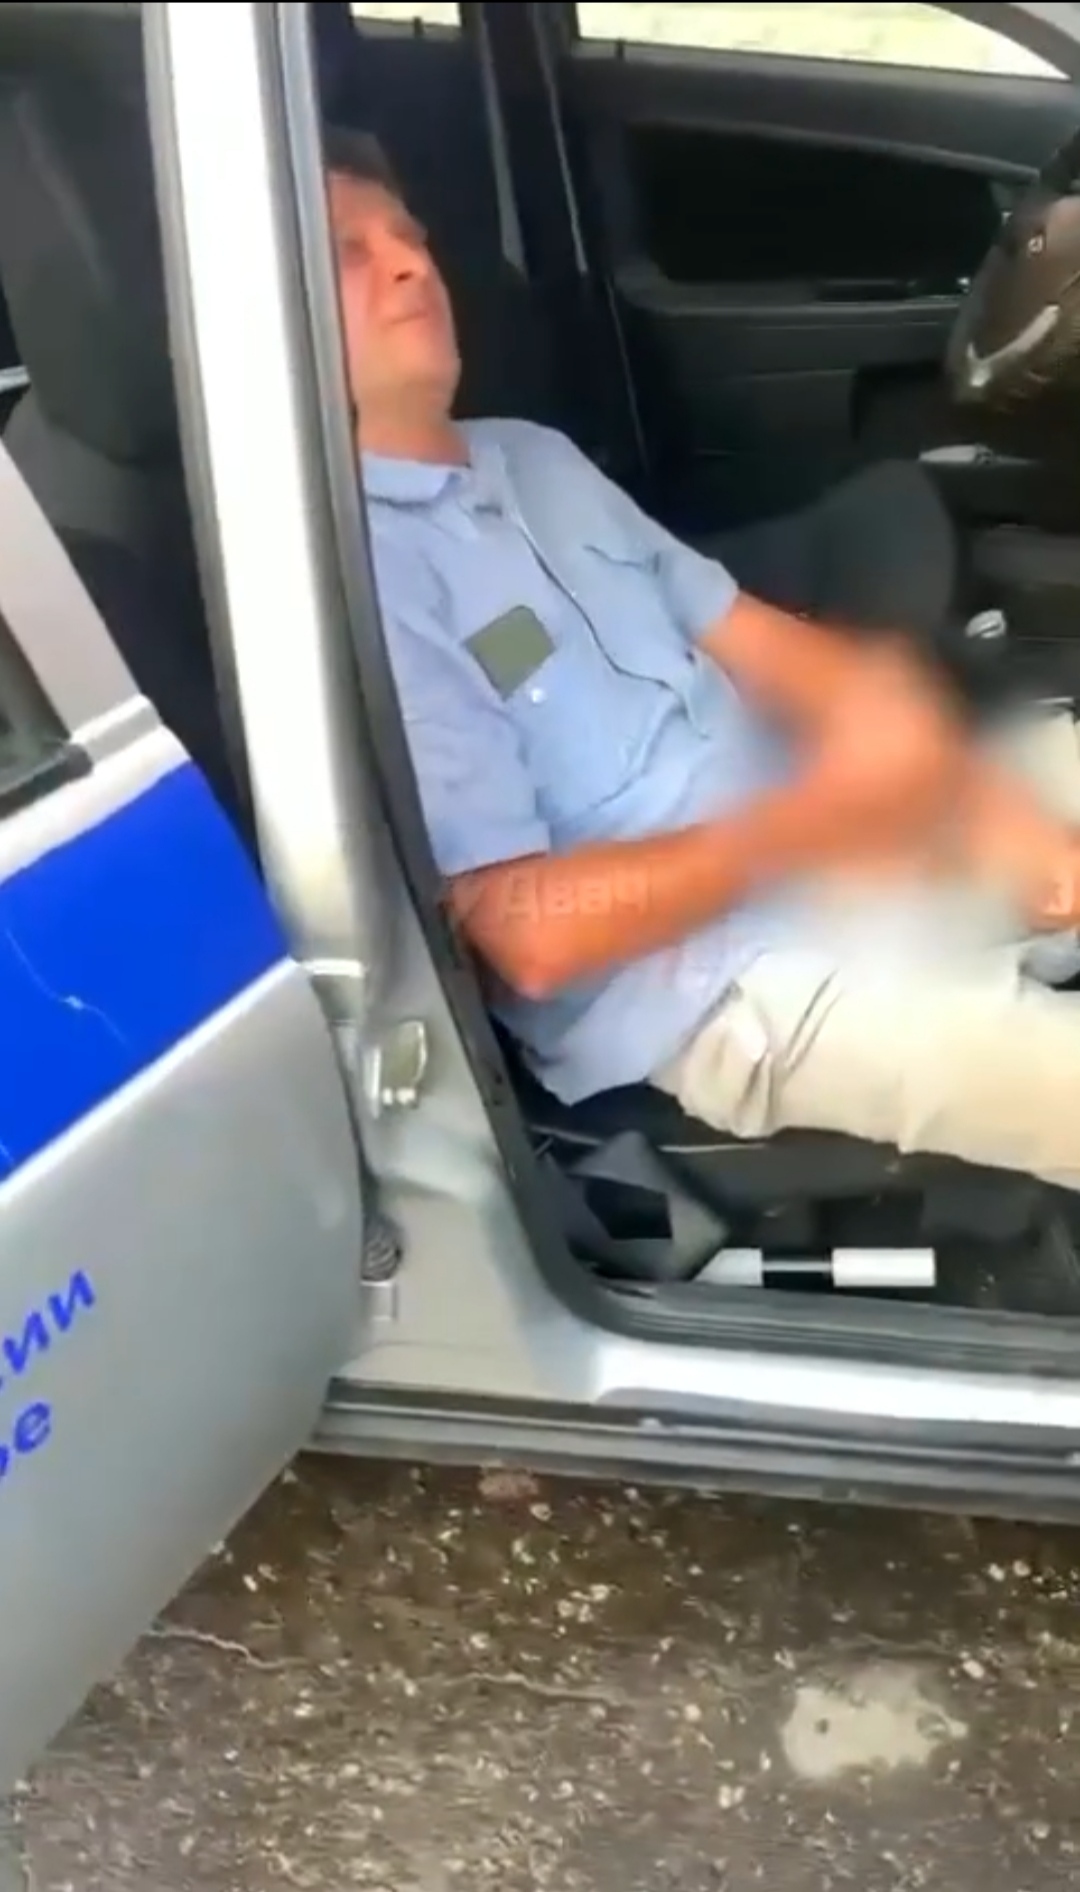 Мигрант — водитель автобуса в Новокузнецке смотрел порно за рулем - 9 ноября - рукописныйтекст.рф